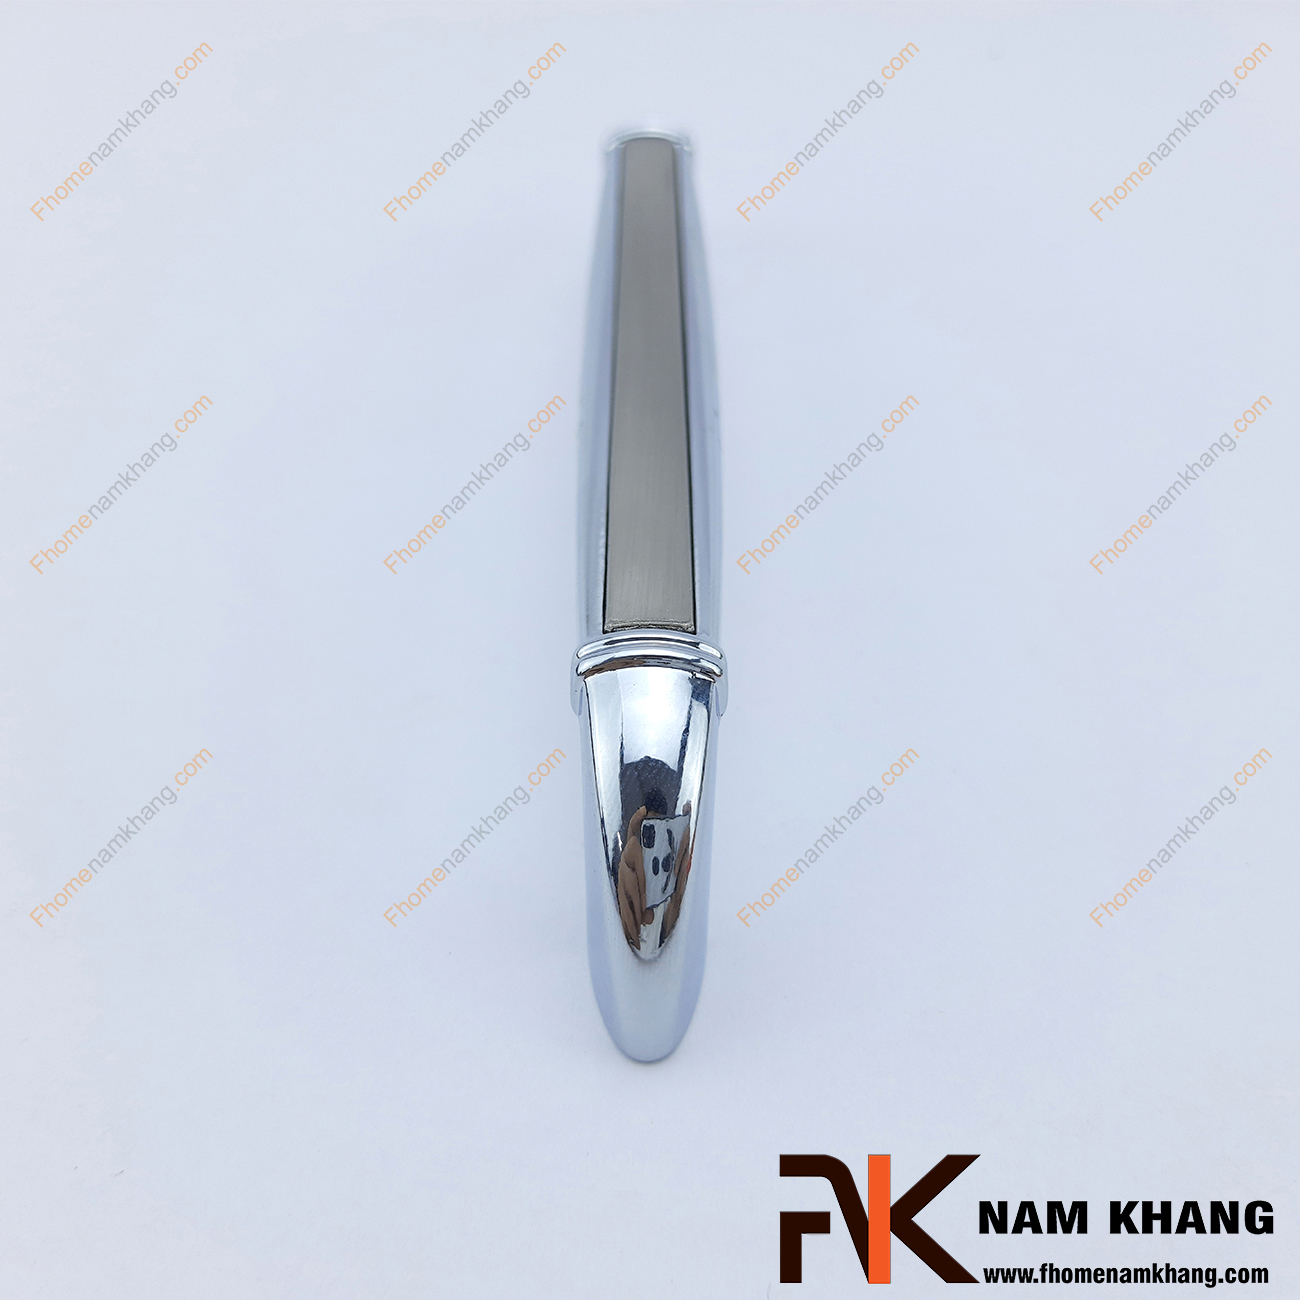 Tay cầm cửa tủ hợp kim NK126-X là một thiết kế tay nắm hợp kim phối hợp với khuôn dạng thon gọn về 2 đầu tay nắm. Các góc cạnh cửa NK126 được bo tròn omega cho độ thon gọn và cảm giác cầm nắm thoải mái.